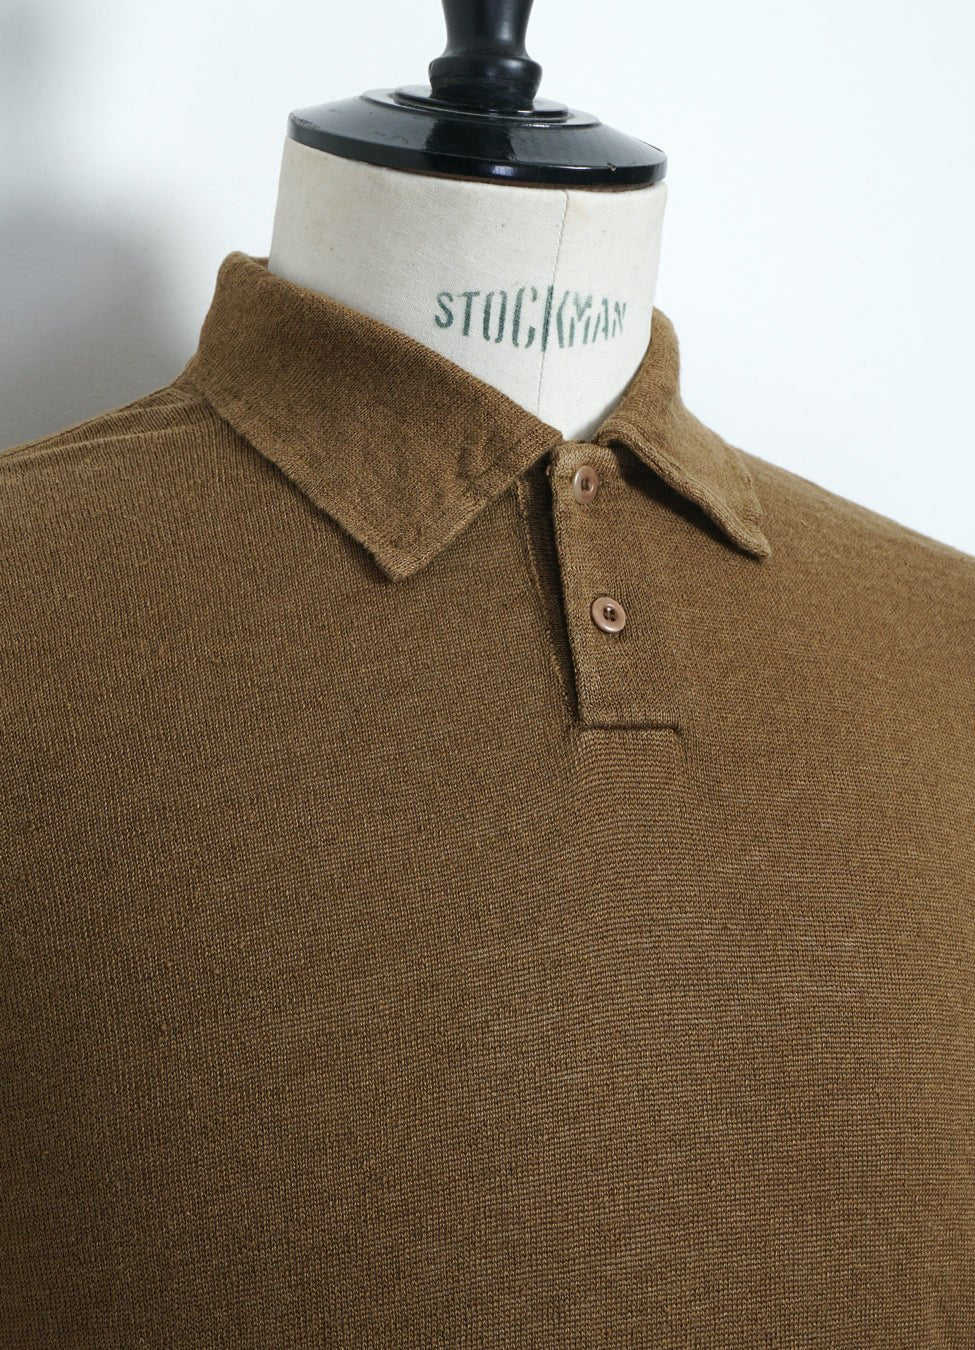 G.R.P - POLO | Short Sleeve 2-Button Polo | Tobacco - HANSEN Garments